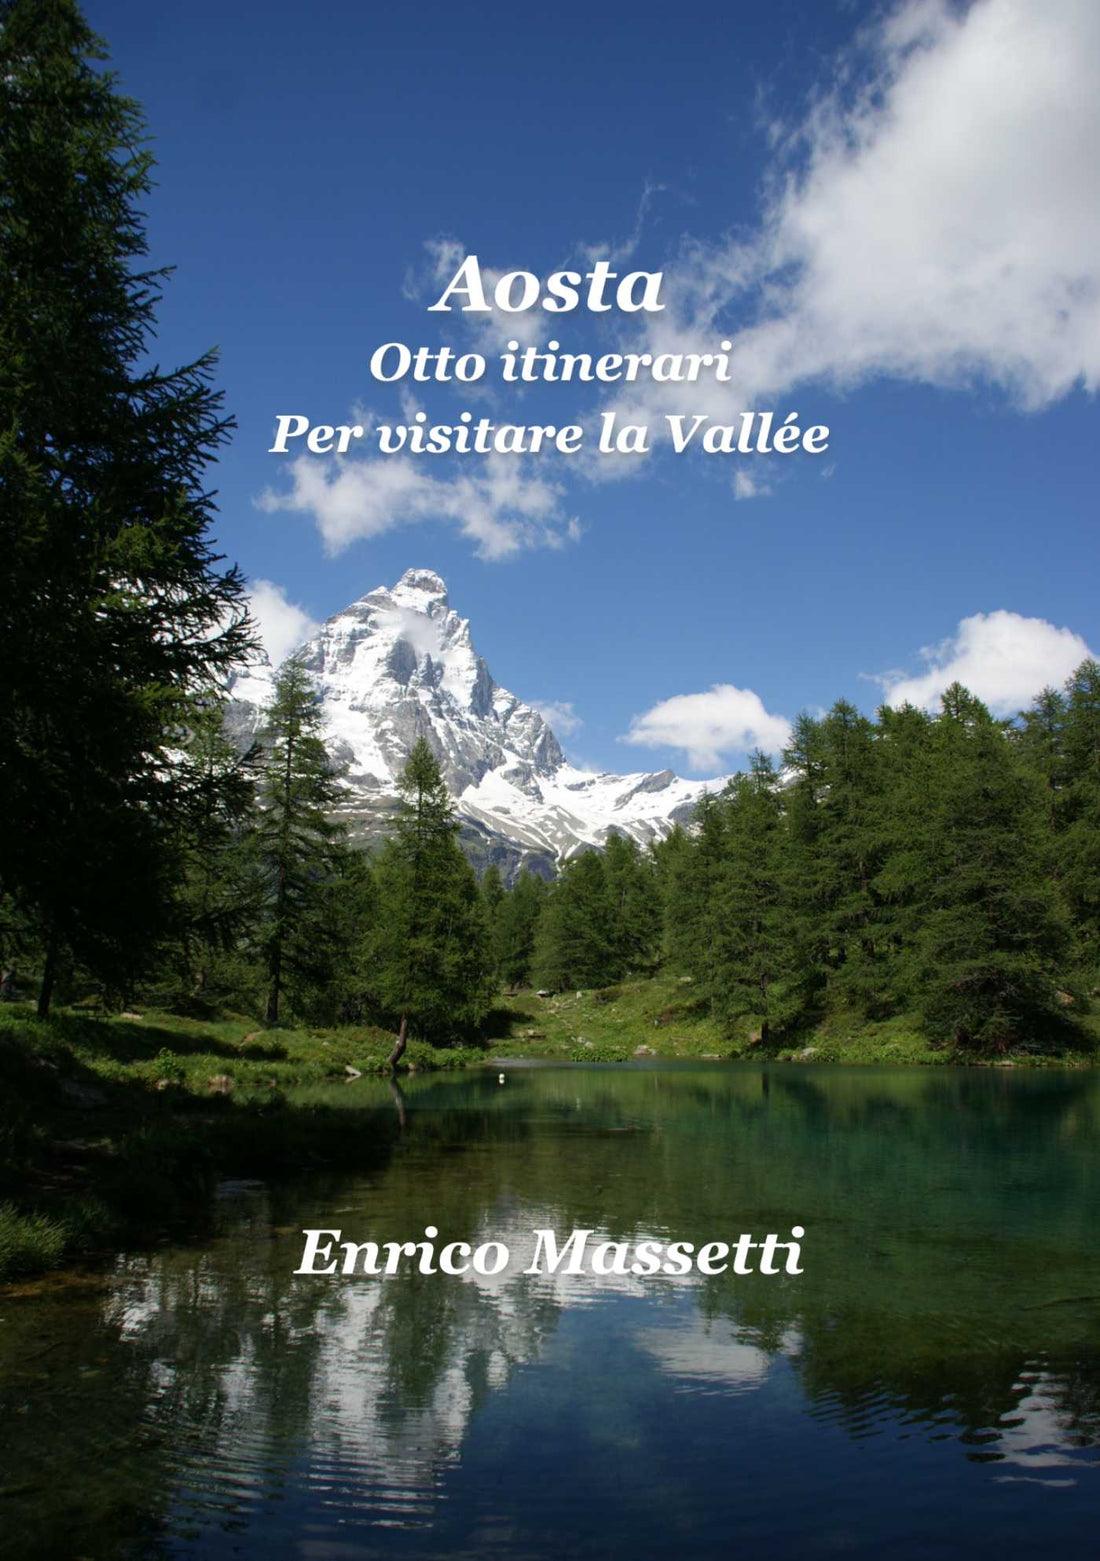 Sconto per il libro "Aosta Otto itinerari per visitare la Valle"